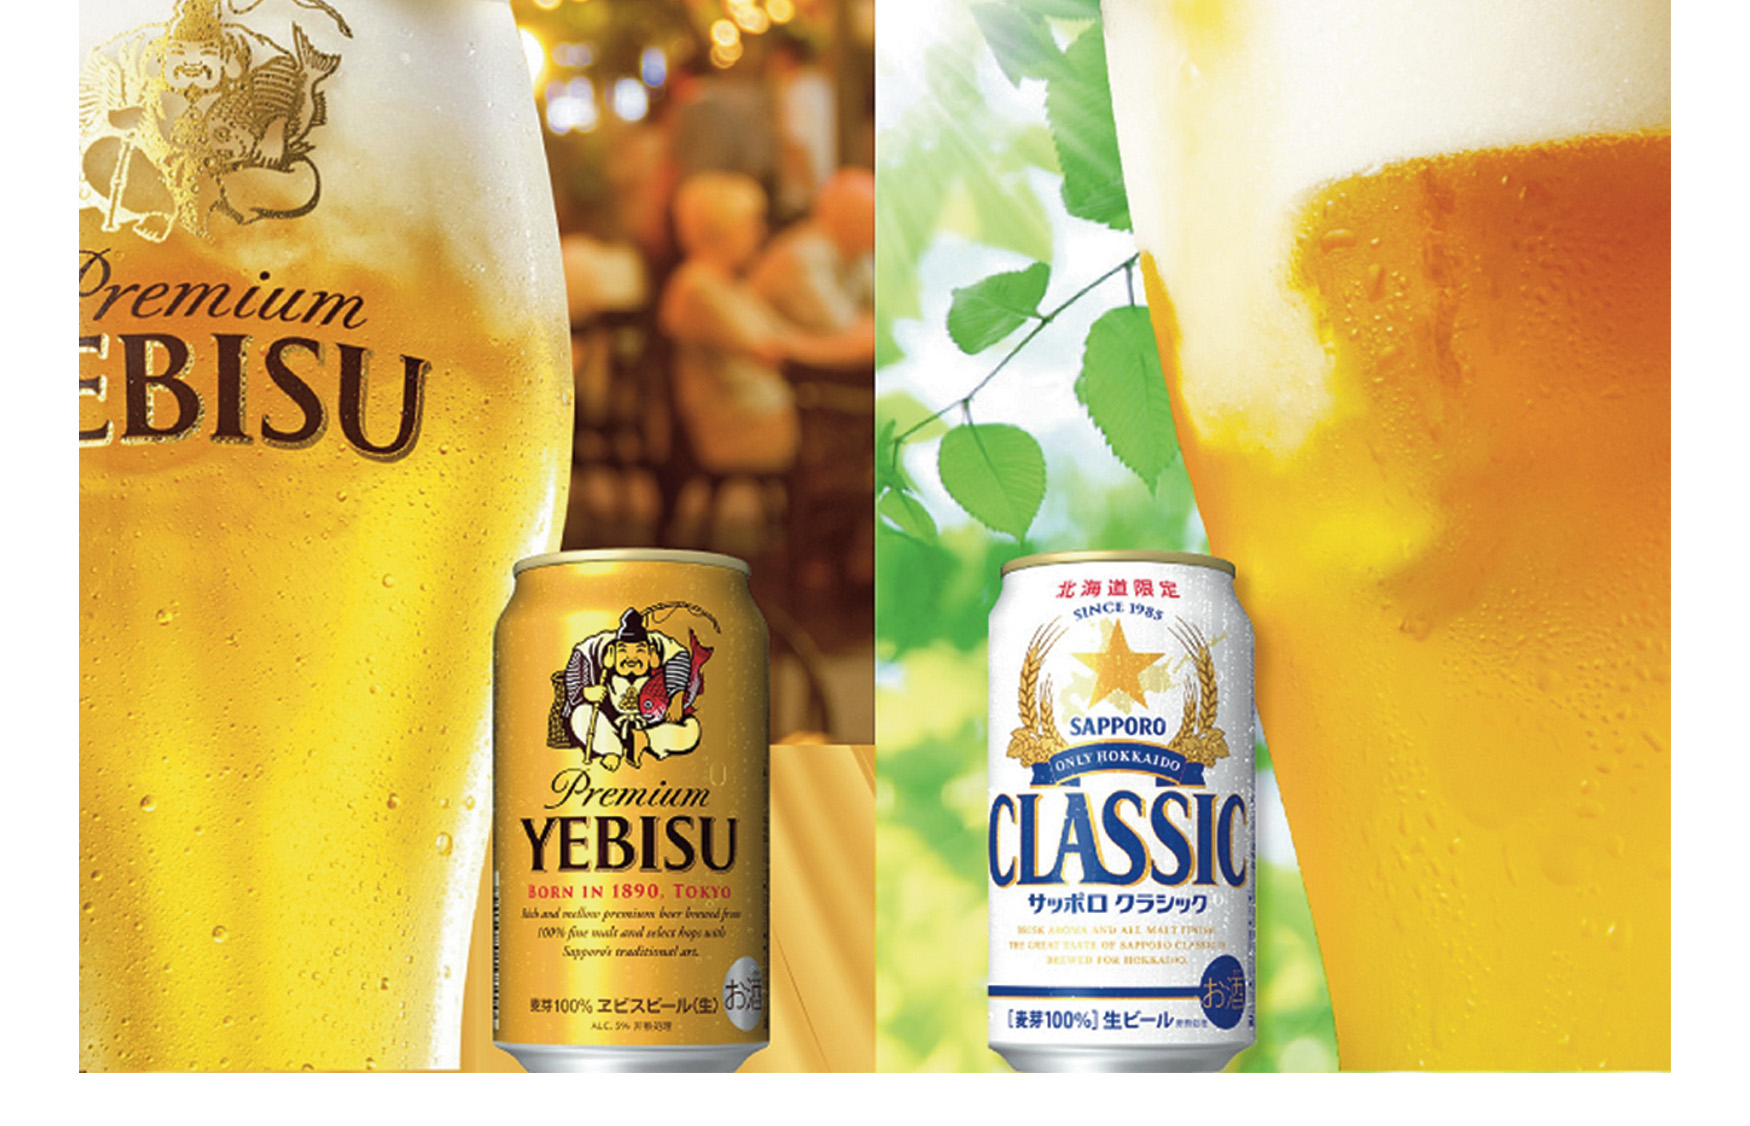 ビール飲み比べ2種セット
サッポロクラシック＆ヱビスビール